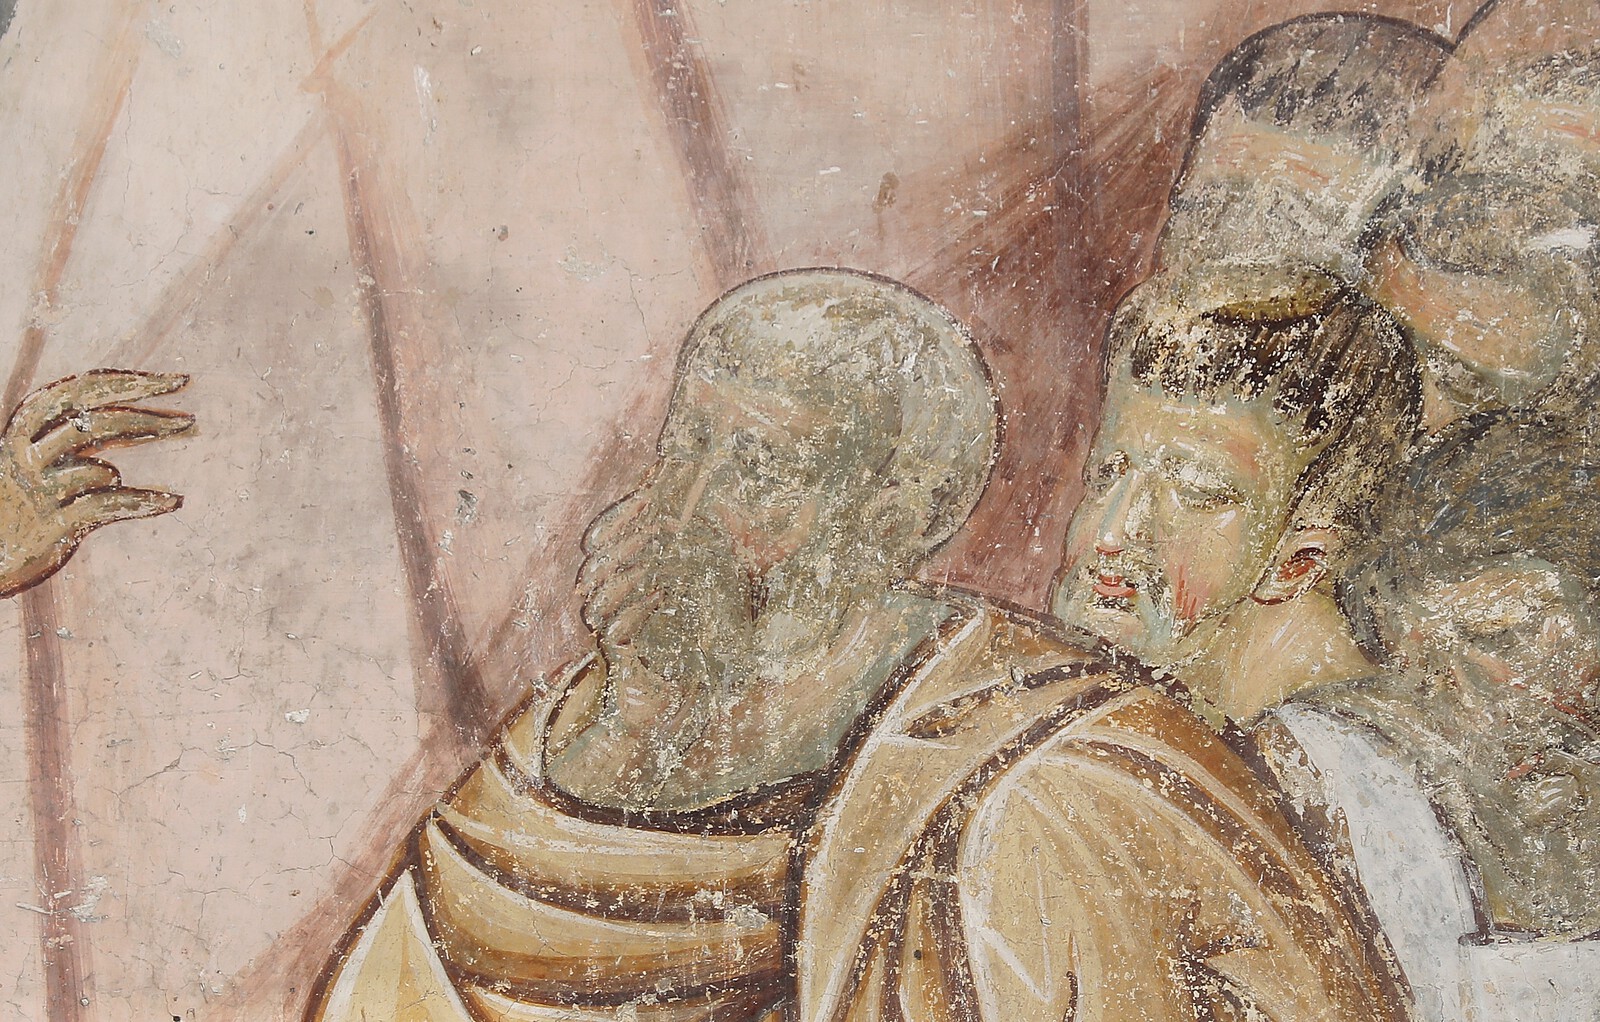 Jesus Prays in Gethsemane, detail